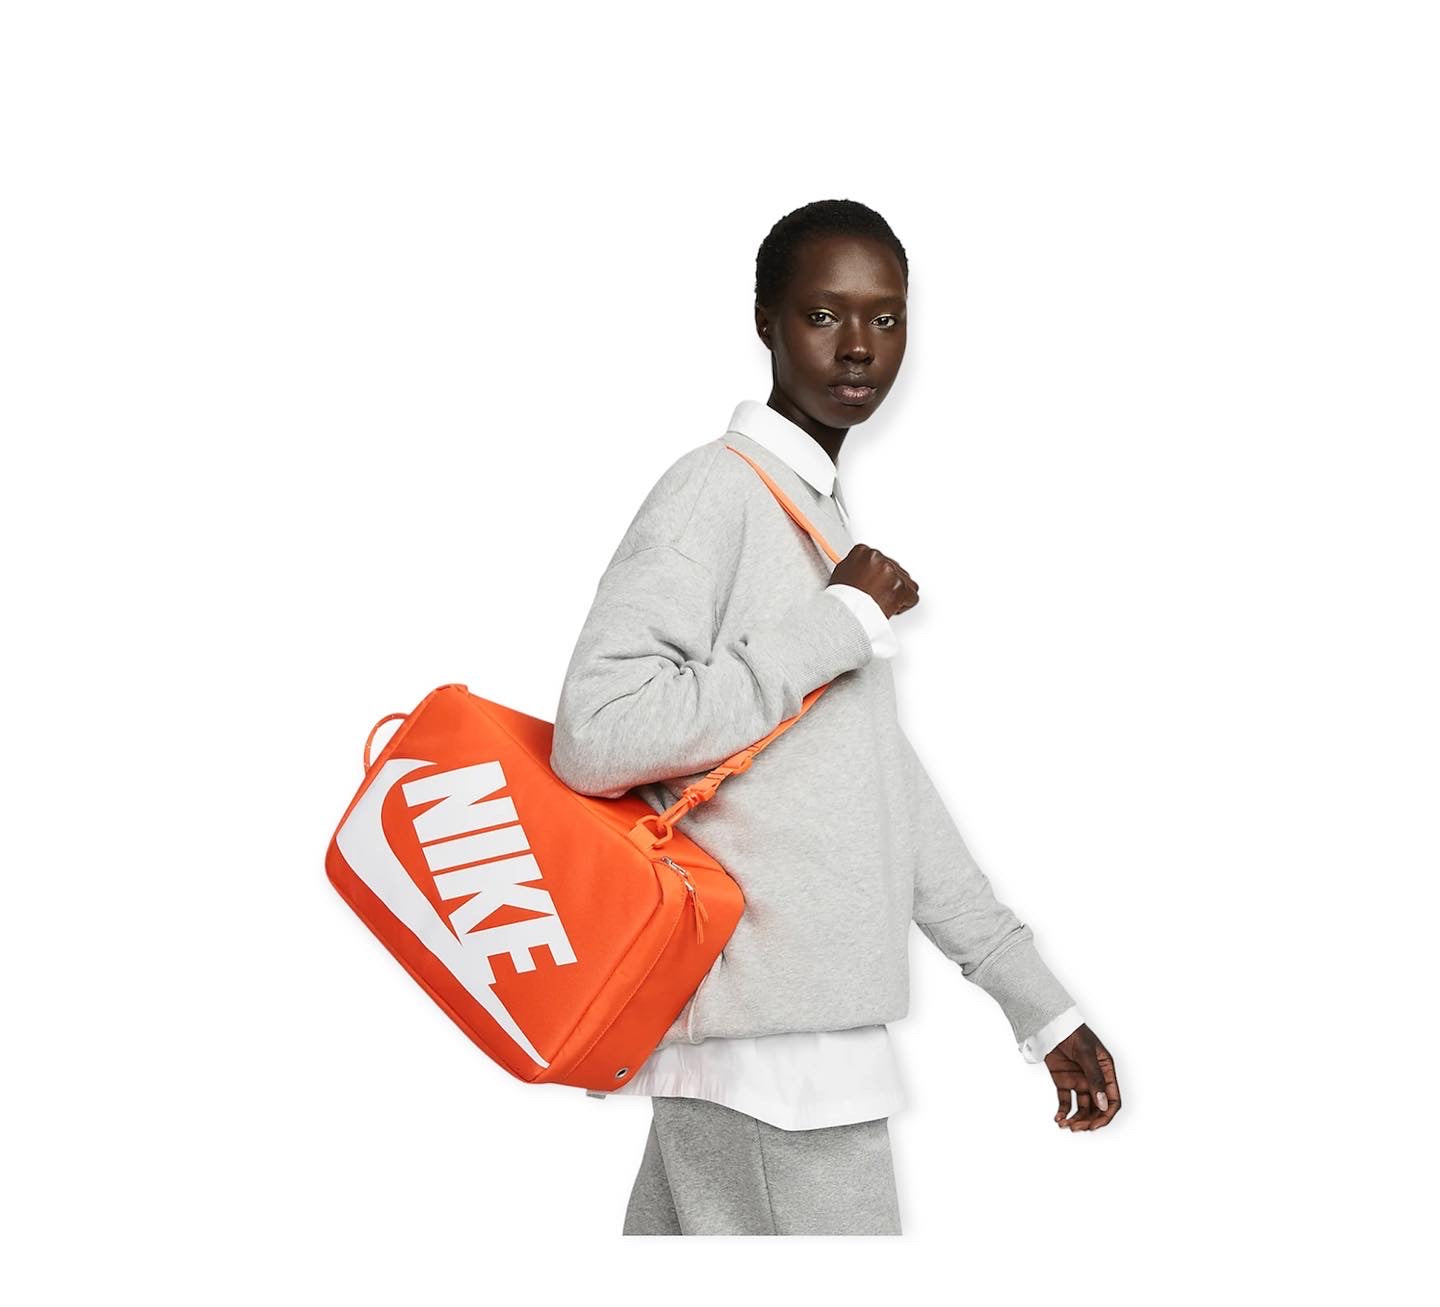 Nike Shoebox Bag